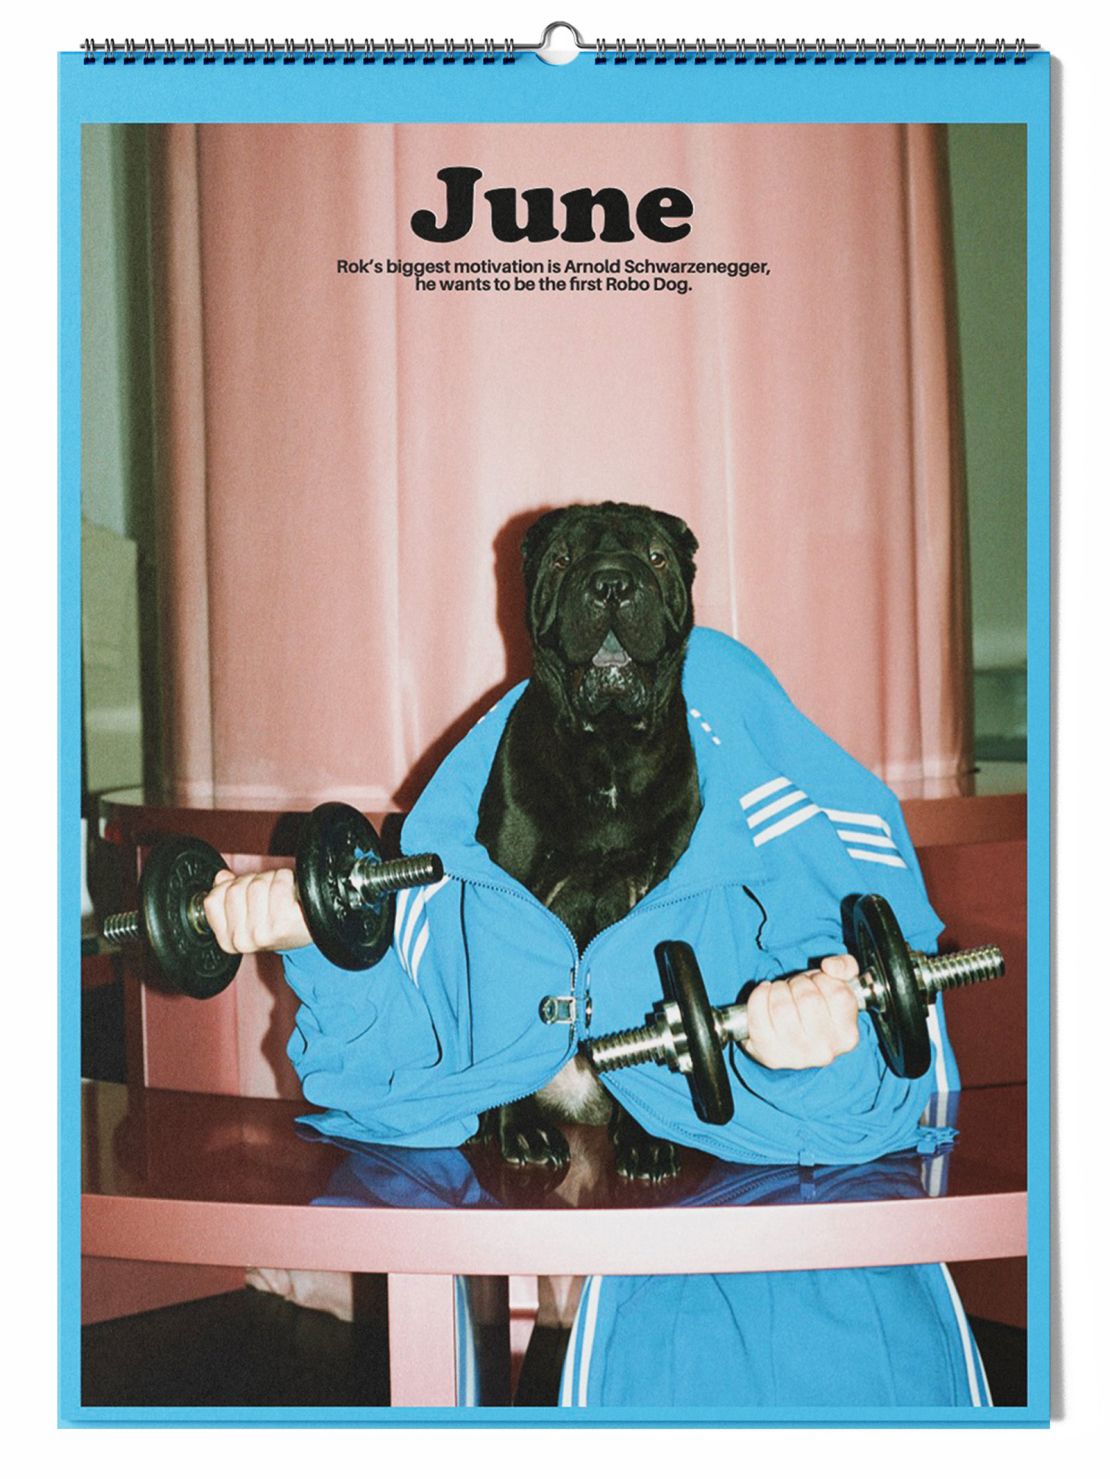 Daniel Gebhart de Koekkoek imagined the lifestyles of 12 dogs in a new calendar.